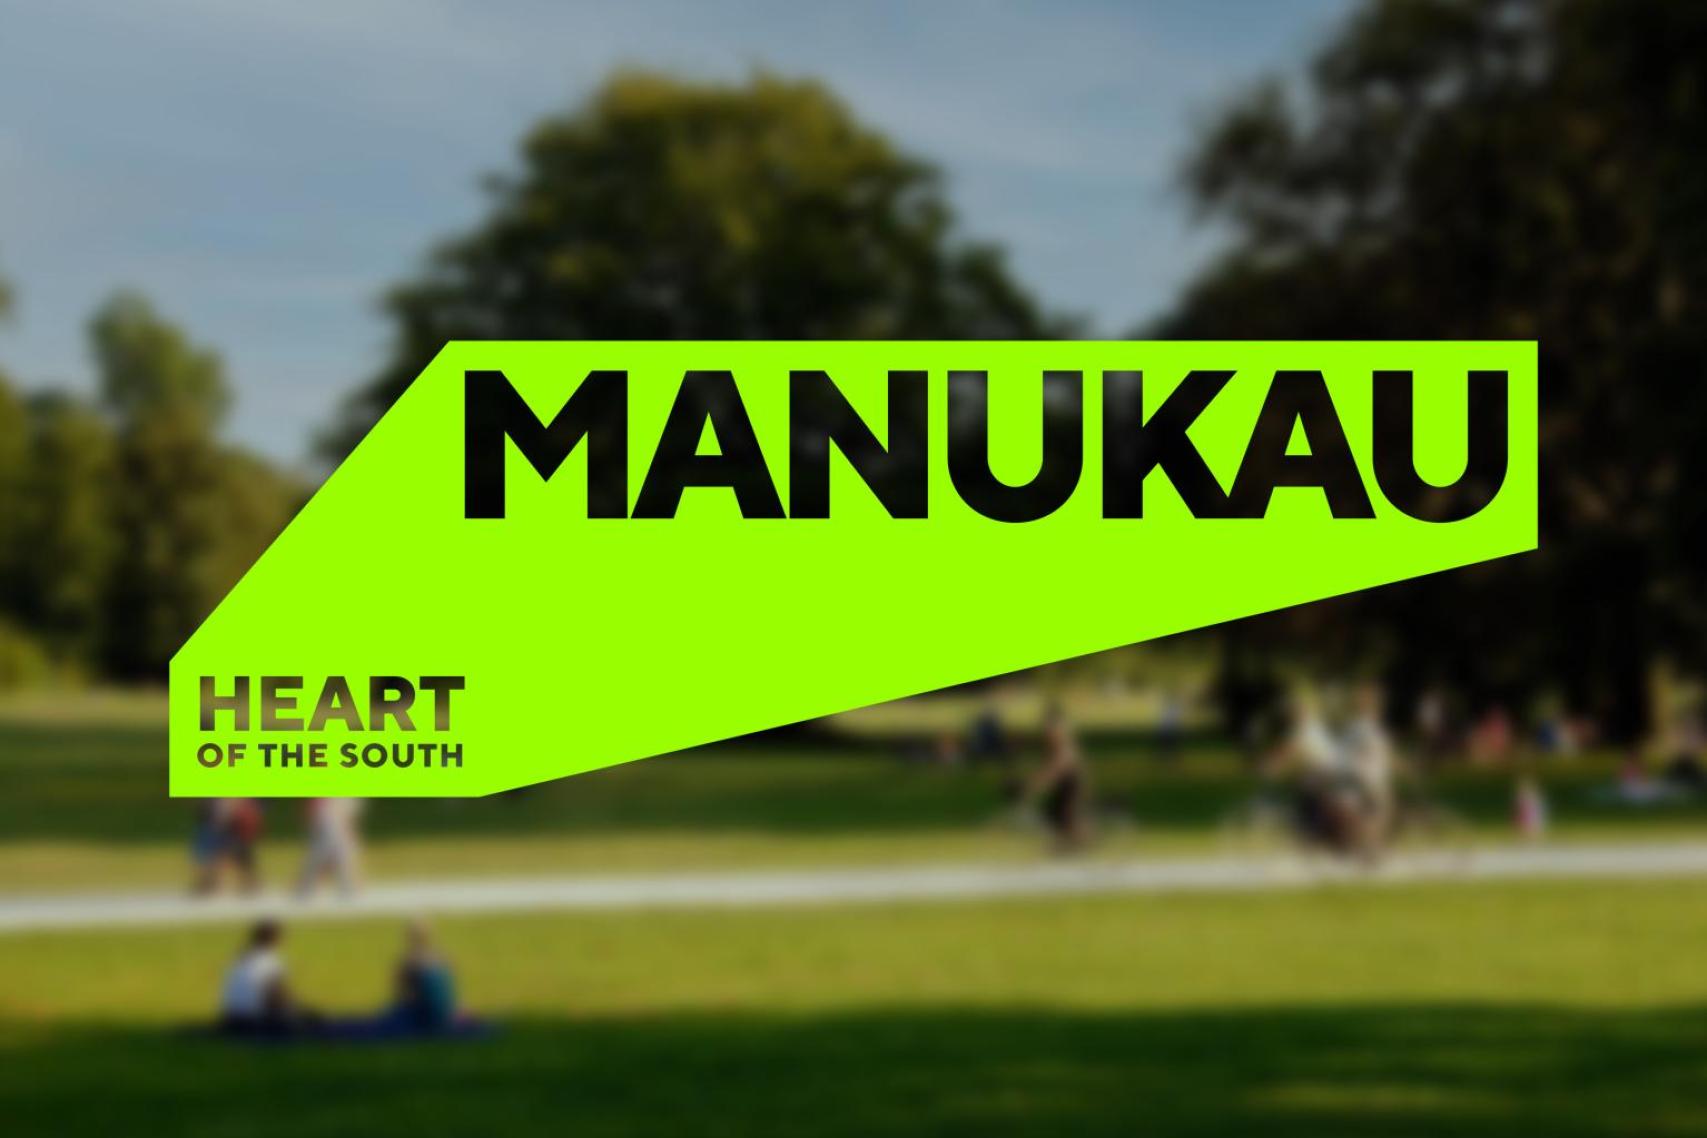 Manukau place identity and design